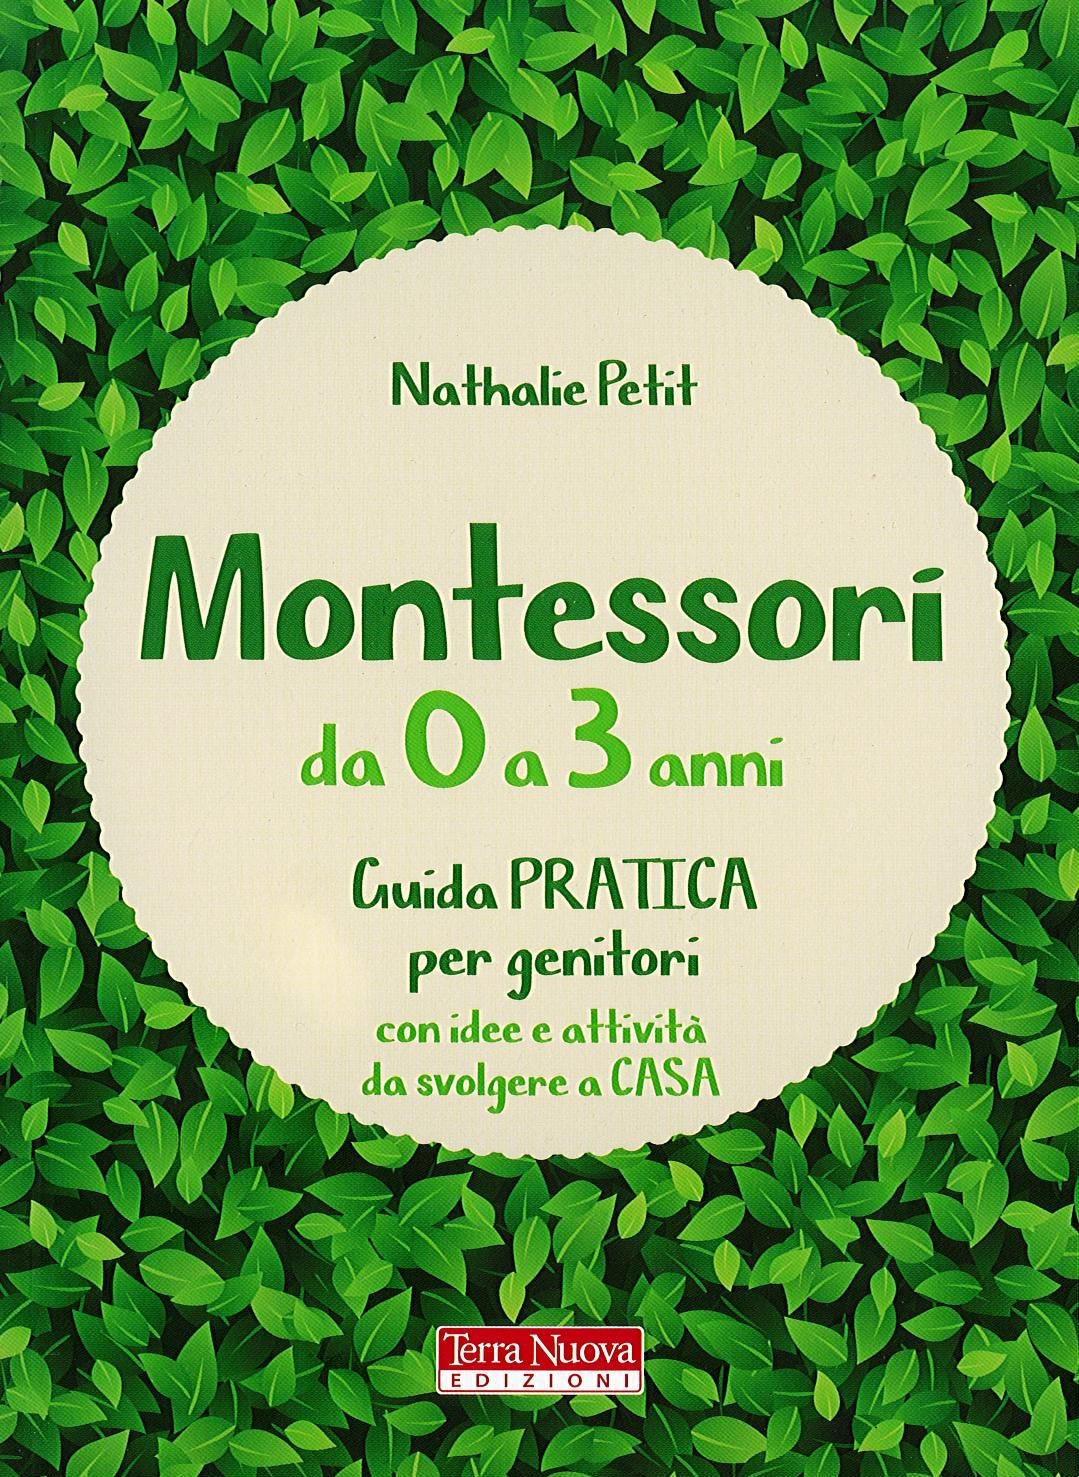 MONTESSORI - Nathalie Petit